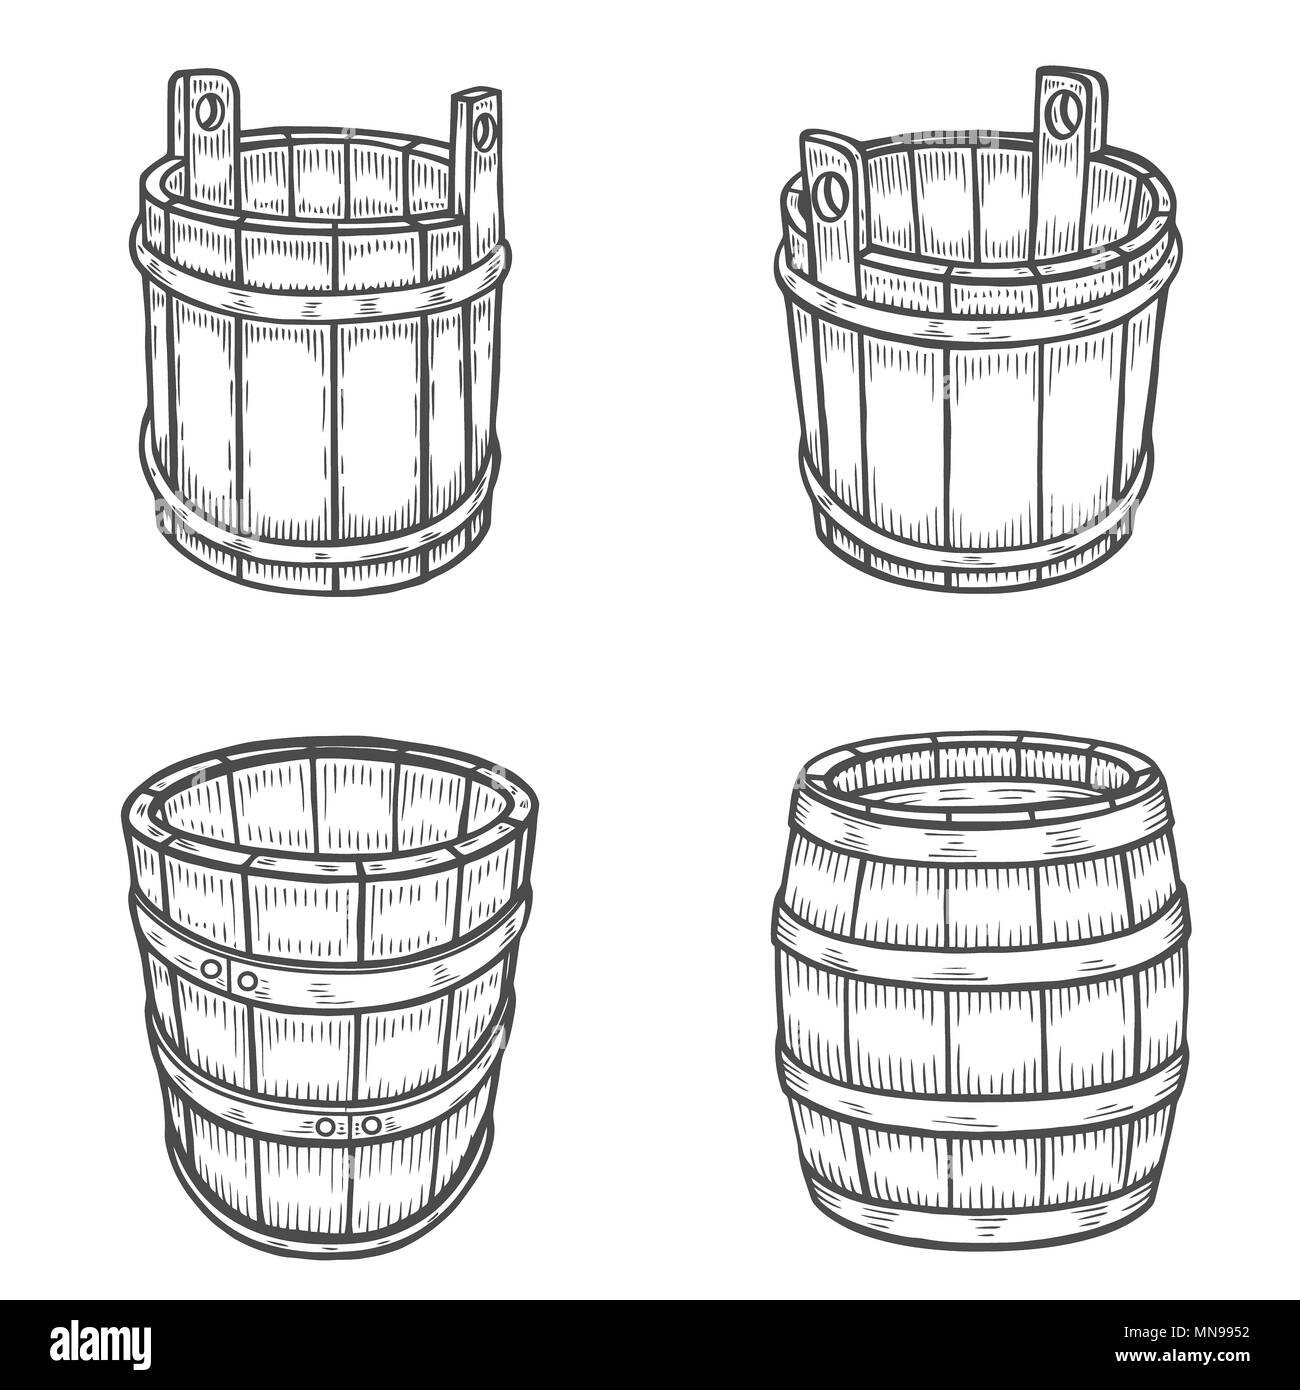 Vektor Skizze Abbildung eines hölzernen Weinfass mit dem Wasserhahn im  Vintage Style mit Ständer. Handgezeichnete kilderkin Logo  Stock-Vektorgrafik - Alamy